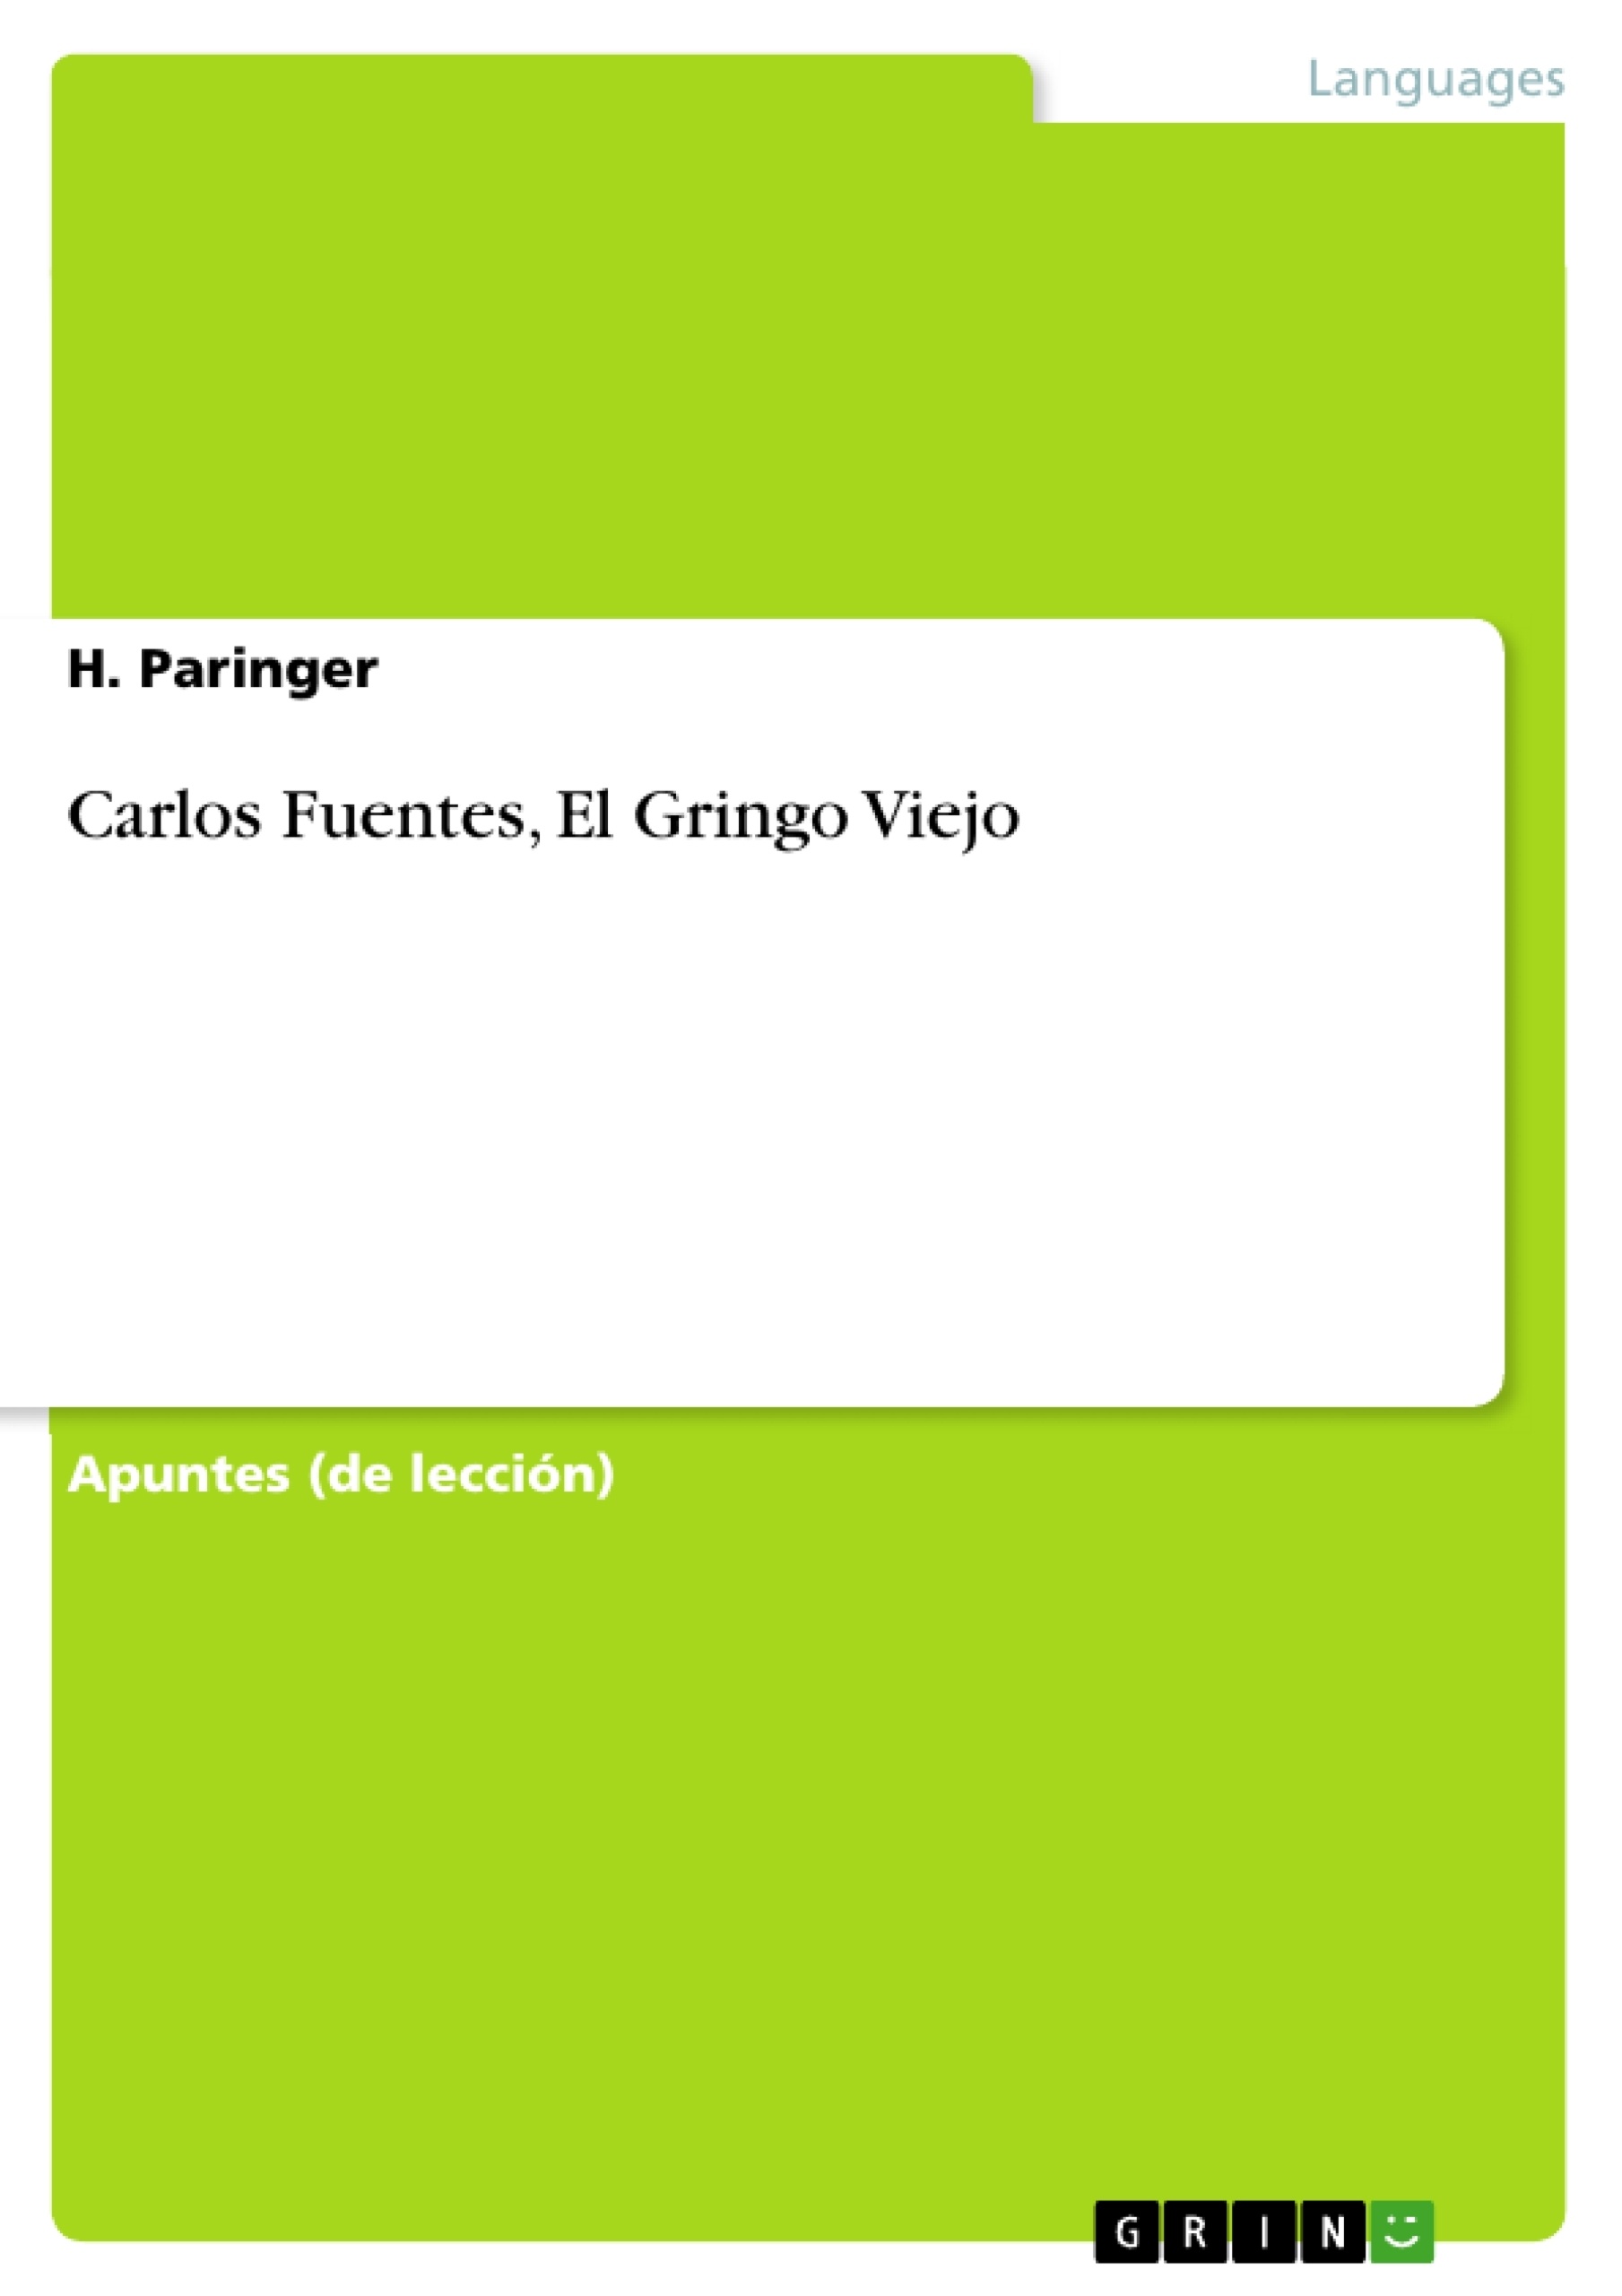 Title: Carlos Fuentes, El Gringo Viejo